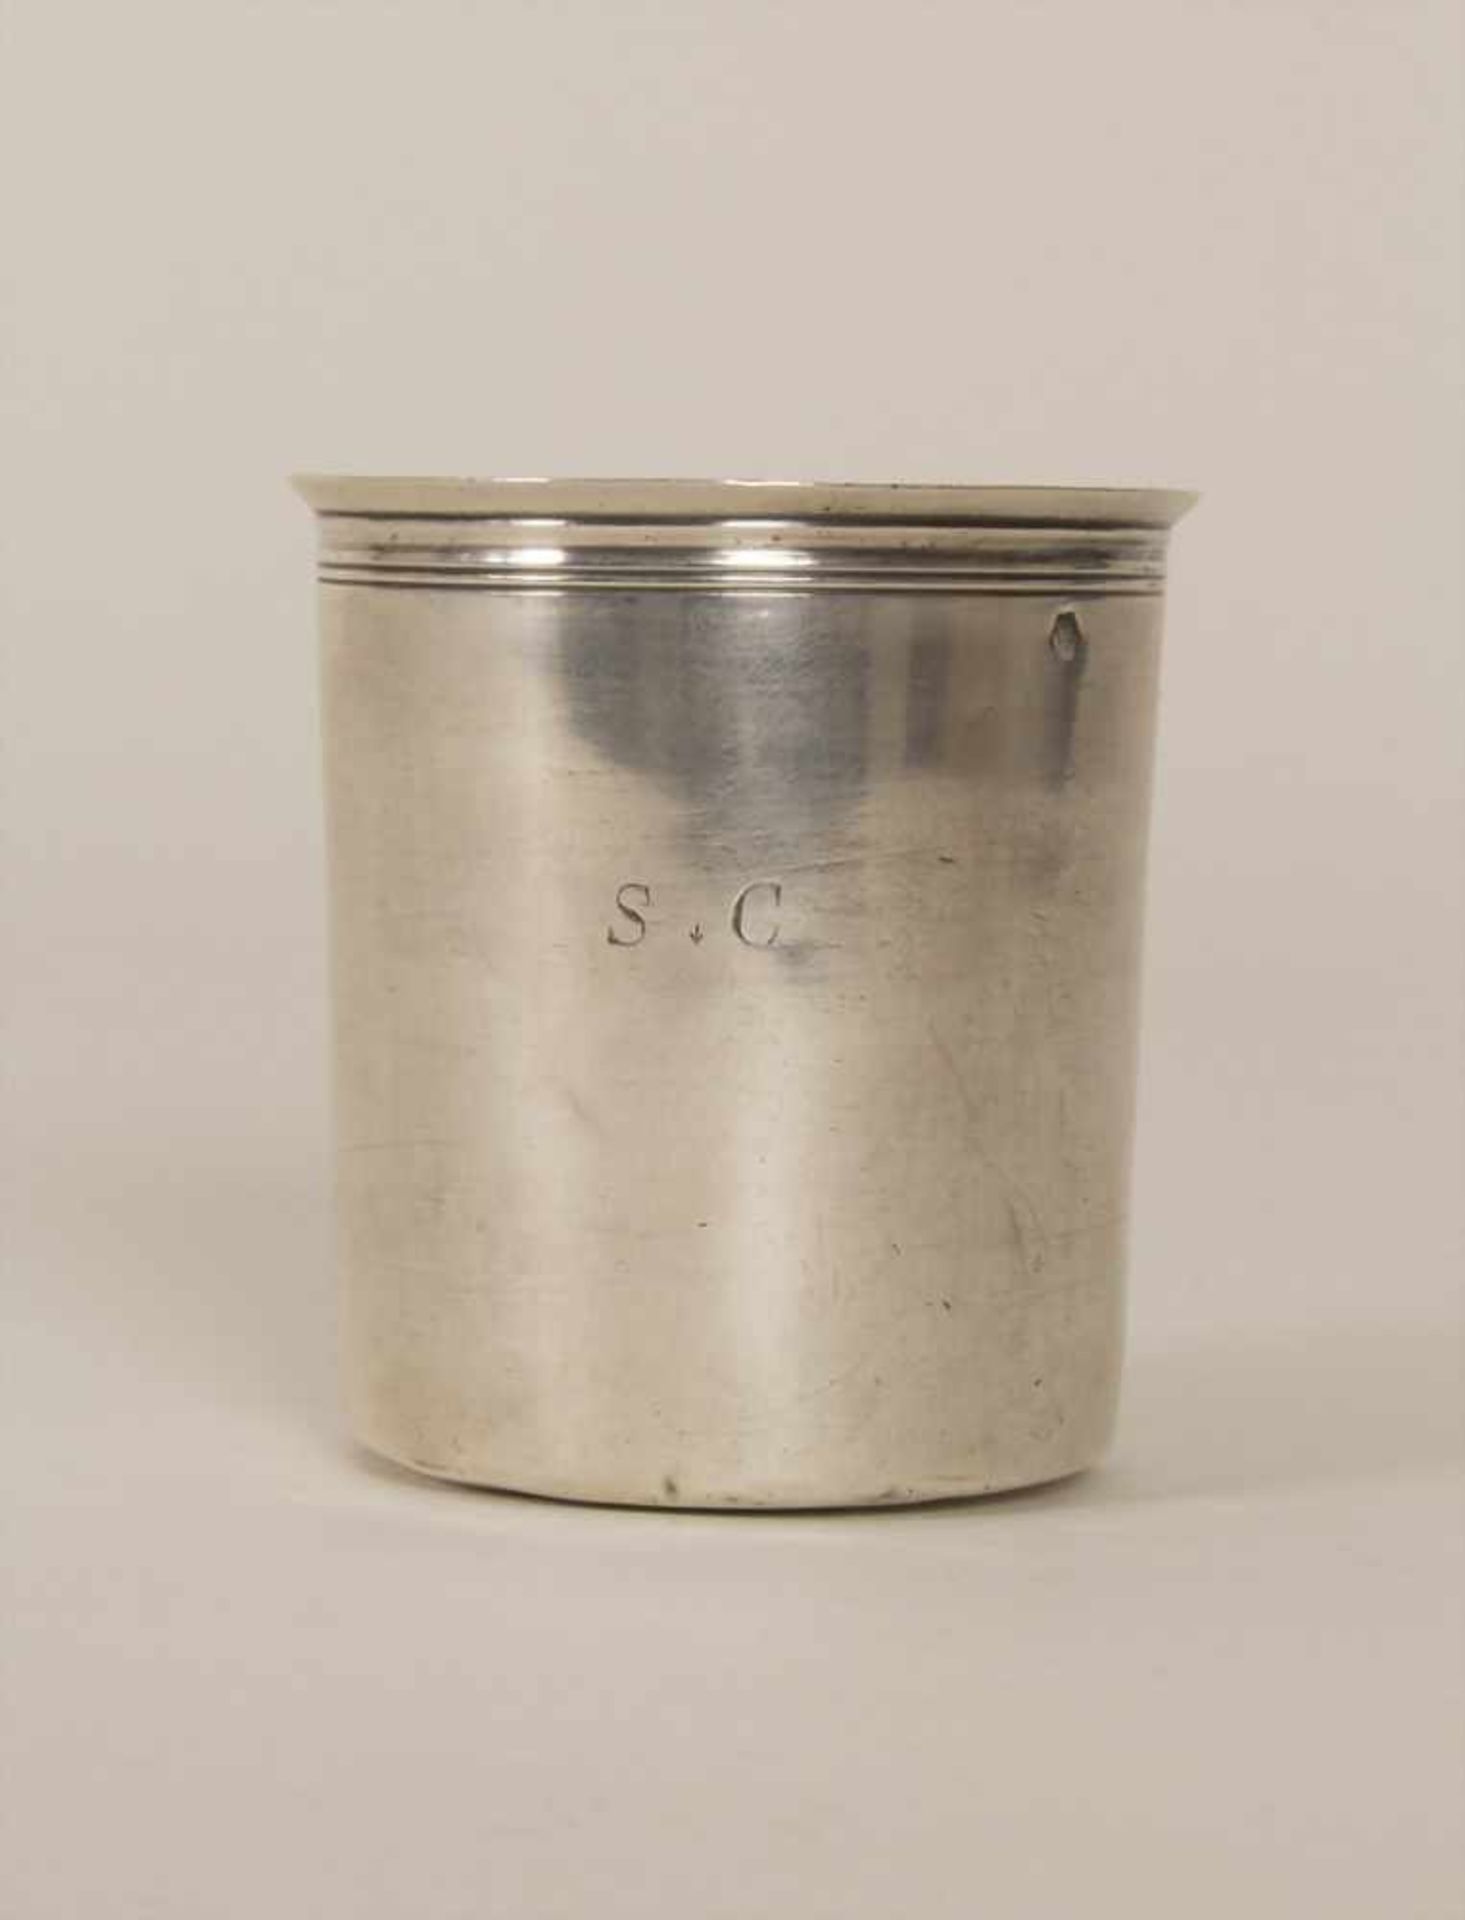 Silberbecher / A silver beaker, Lyon, 1819-1838Material: Silber 950/000, Punzierung: